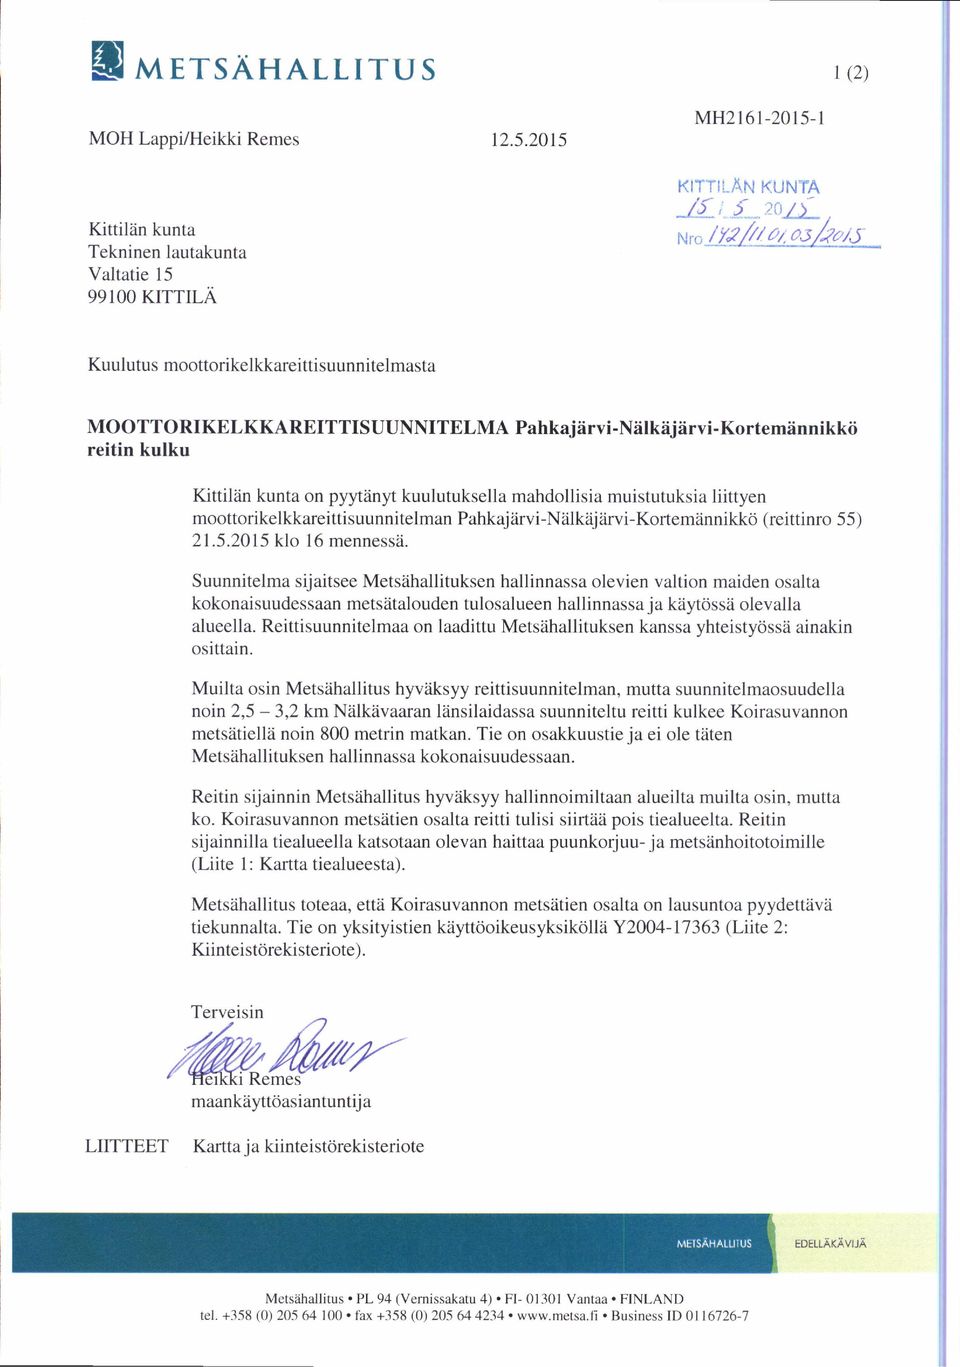 mahdollisia muistutuksia liittyen moottorikelkkareittisuunnitelman Pahkajärvi-Nälkäjärvi-Kortemännikkö (reittinro 55) 21.5.2015 klo 16 mennessä.